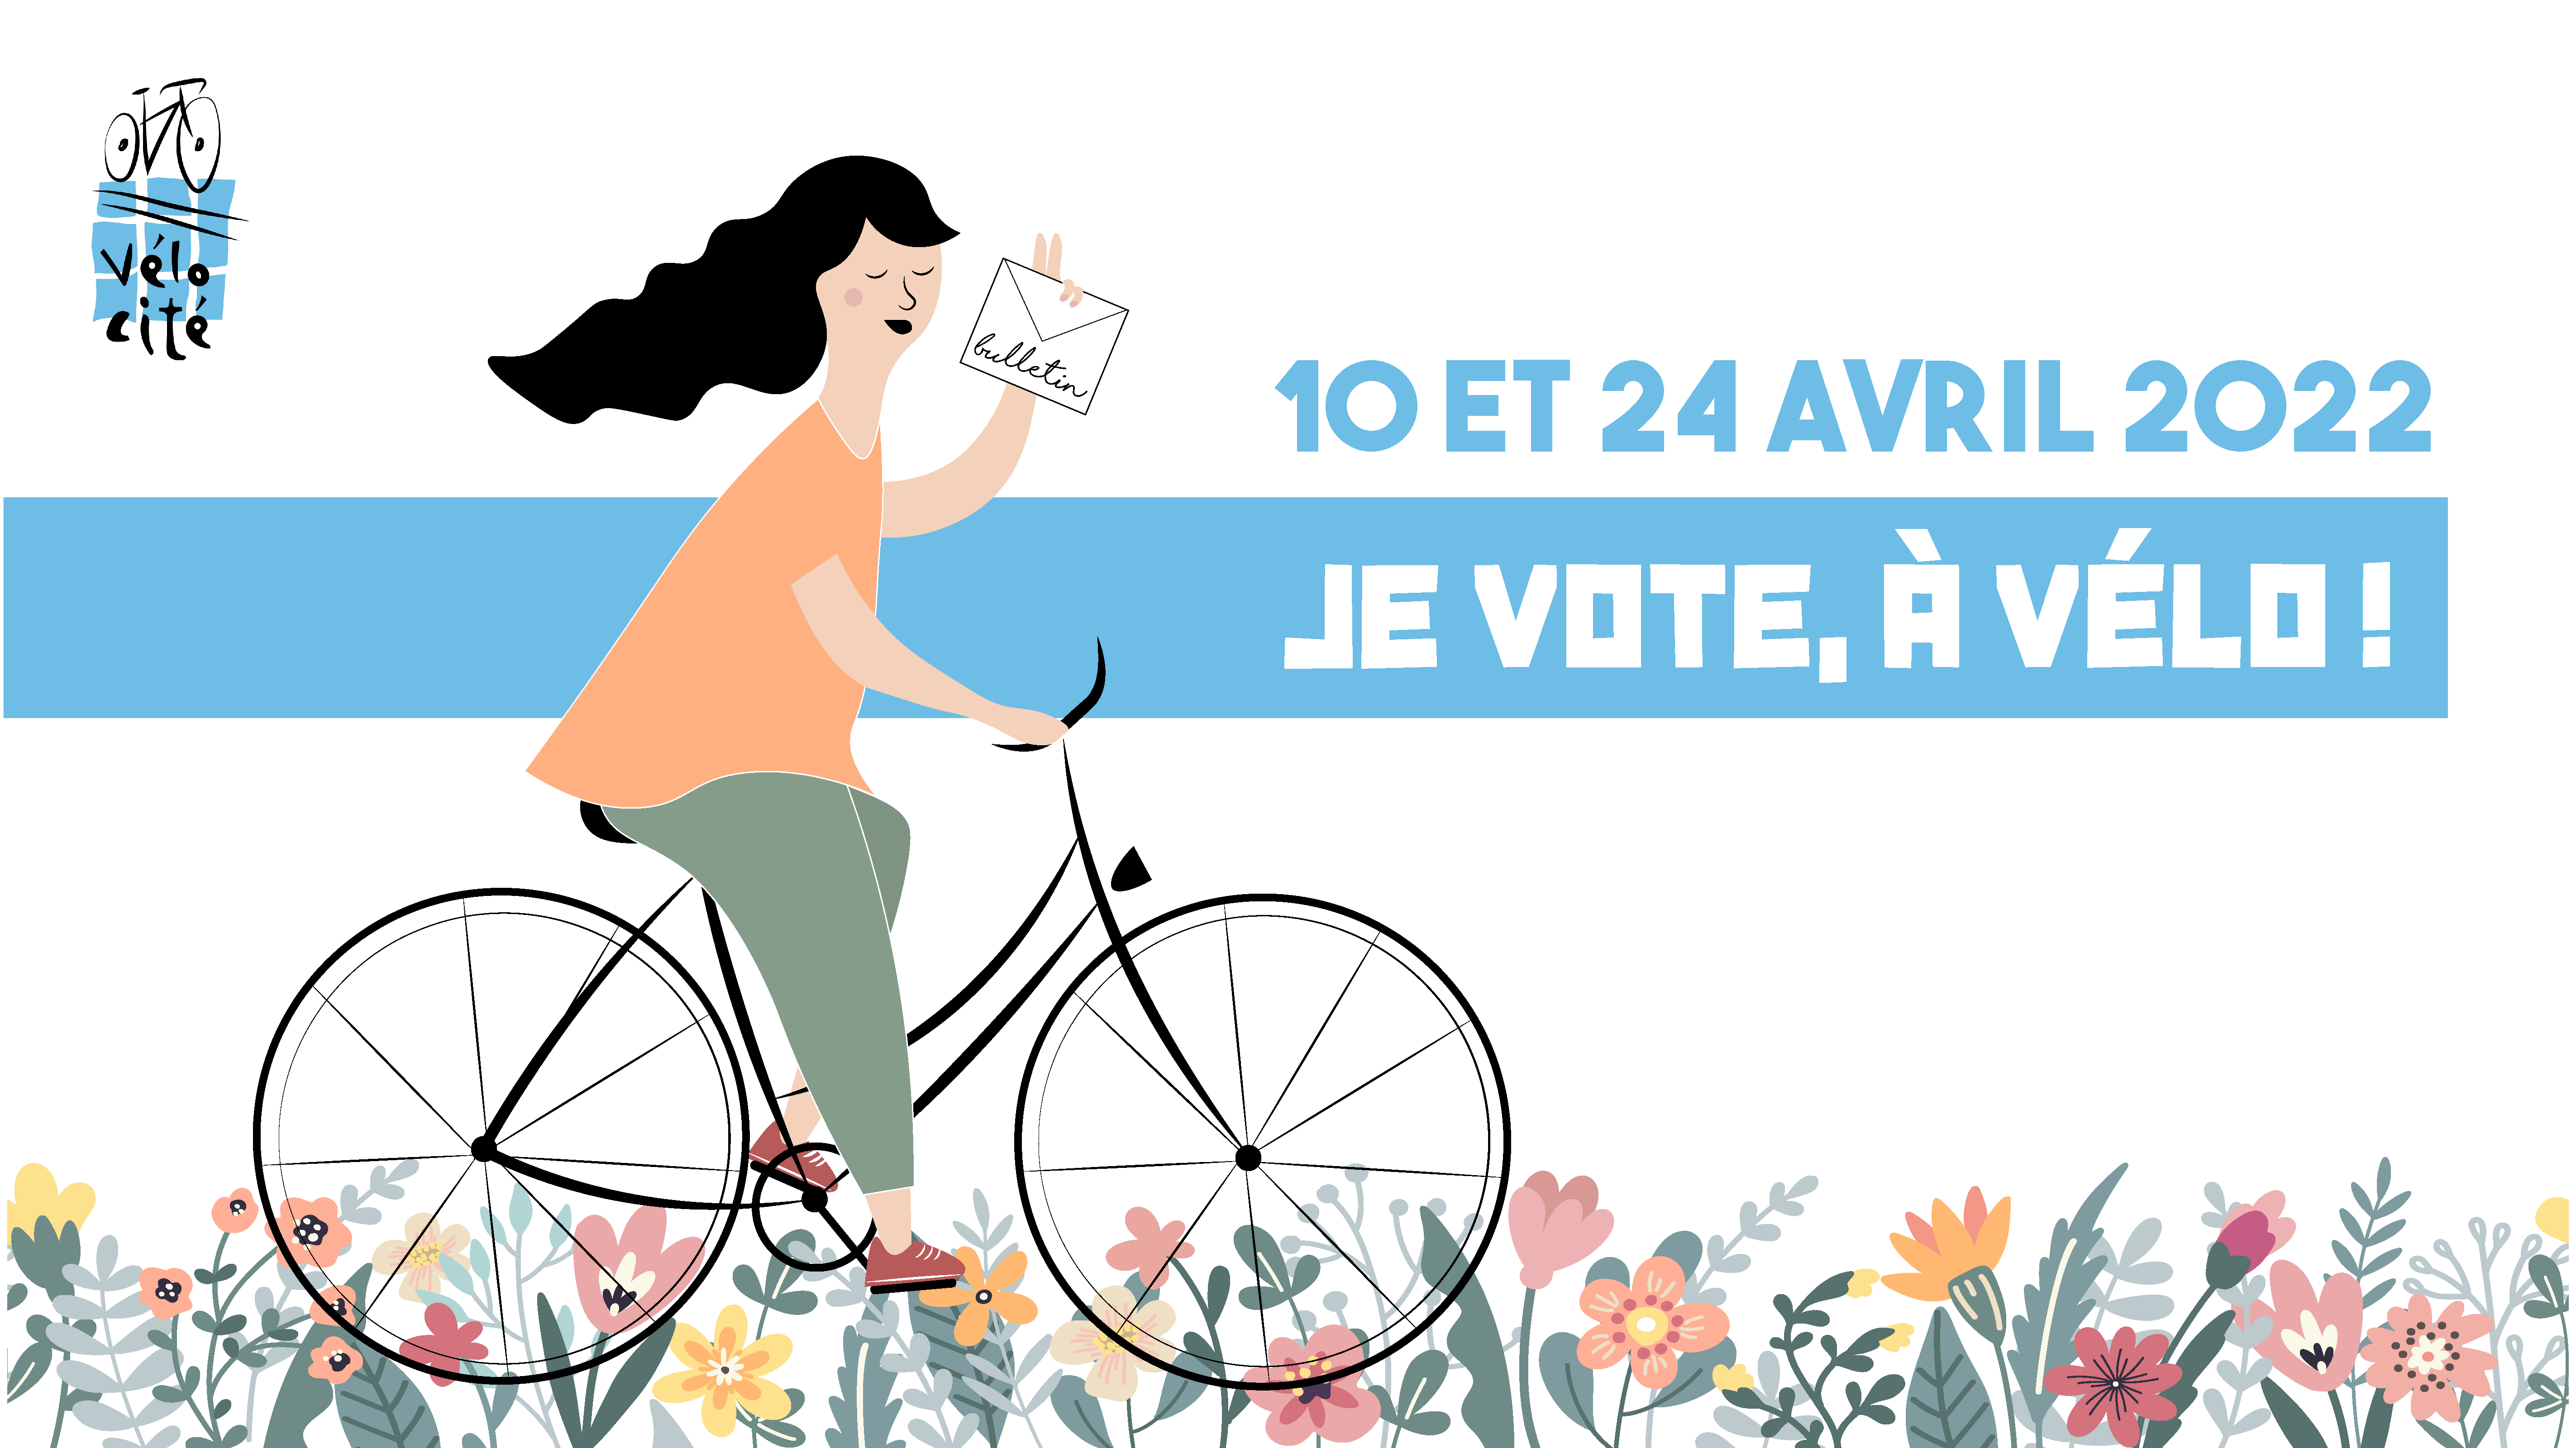 Élection présidentielle 2022 “Je vote, à vélo !”